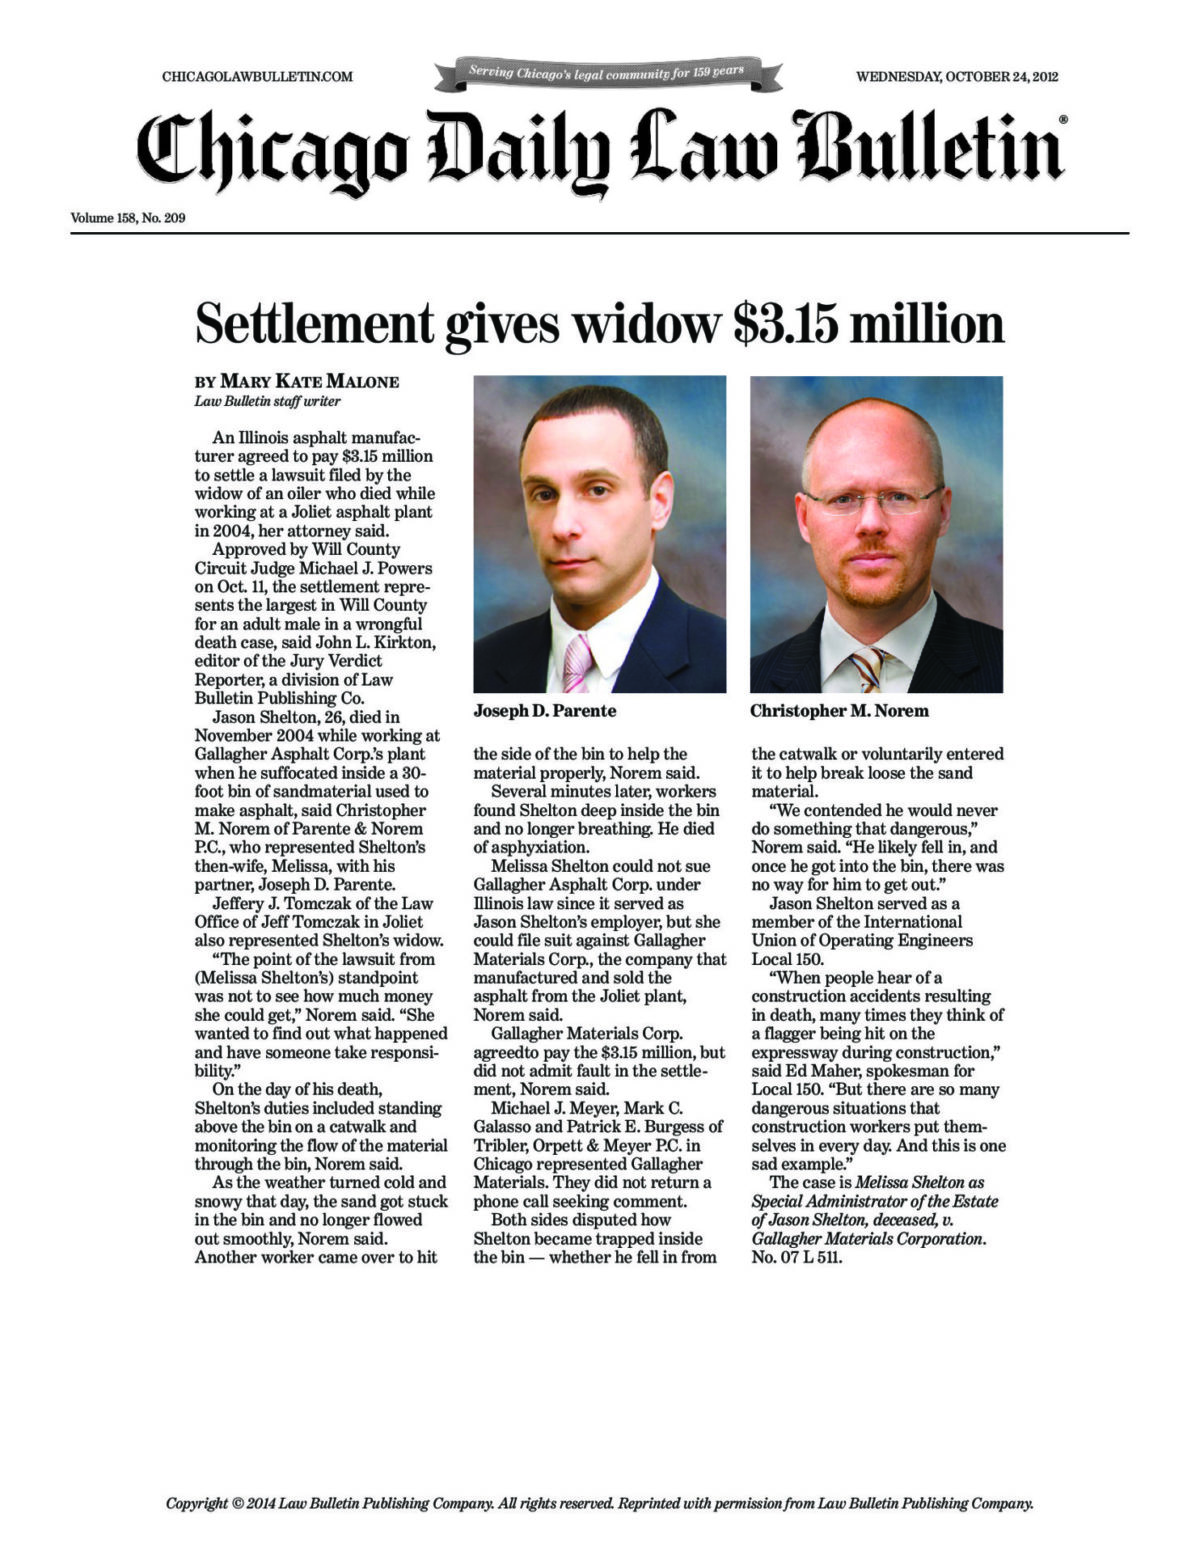 Settlement gives widow $3.15 million